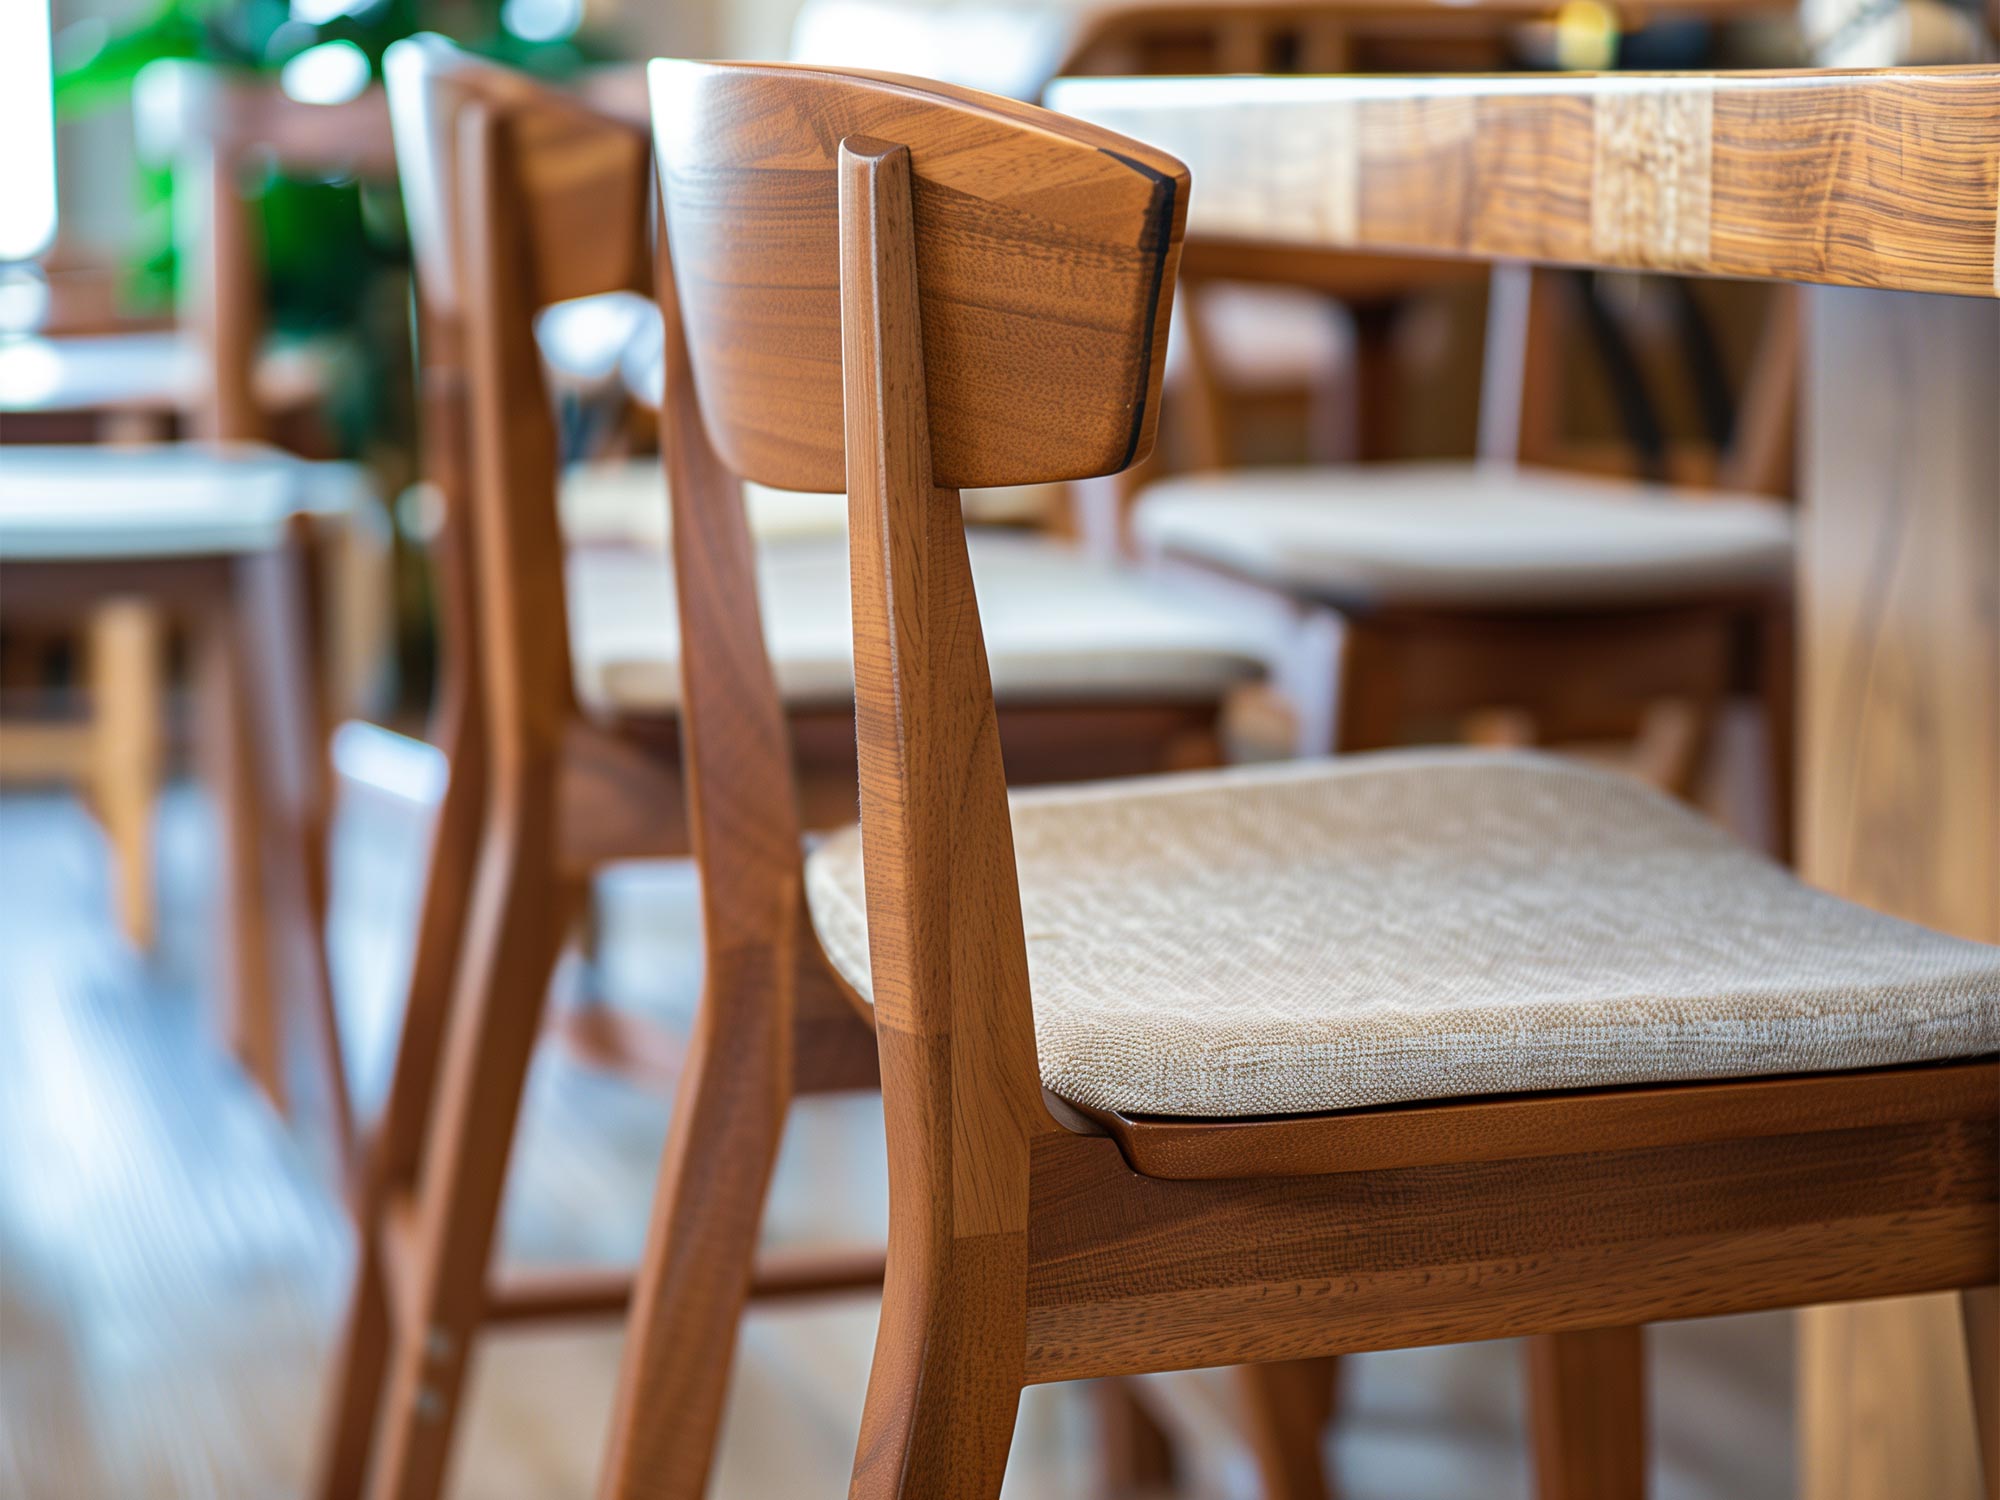 Tanie krzesła do kuchni – jak wybrać bez nadszarpnięcia budżetu?